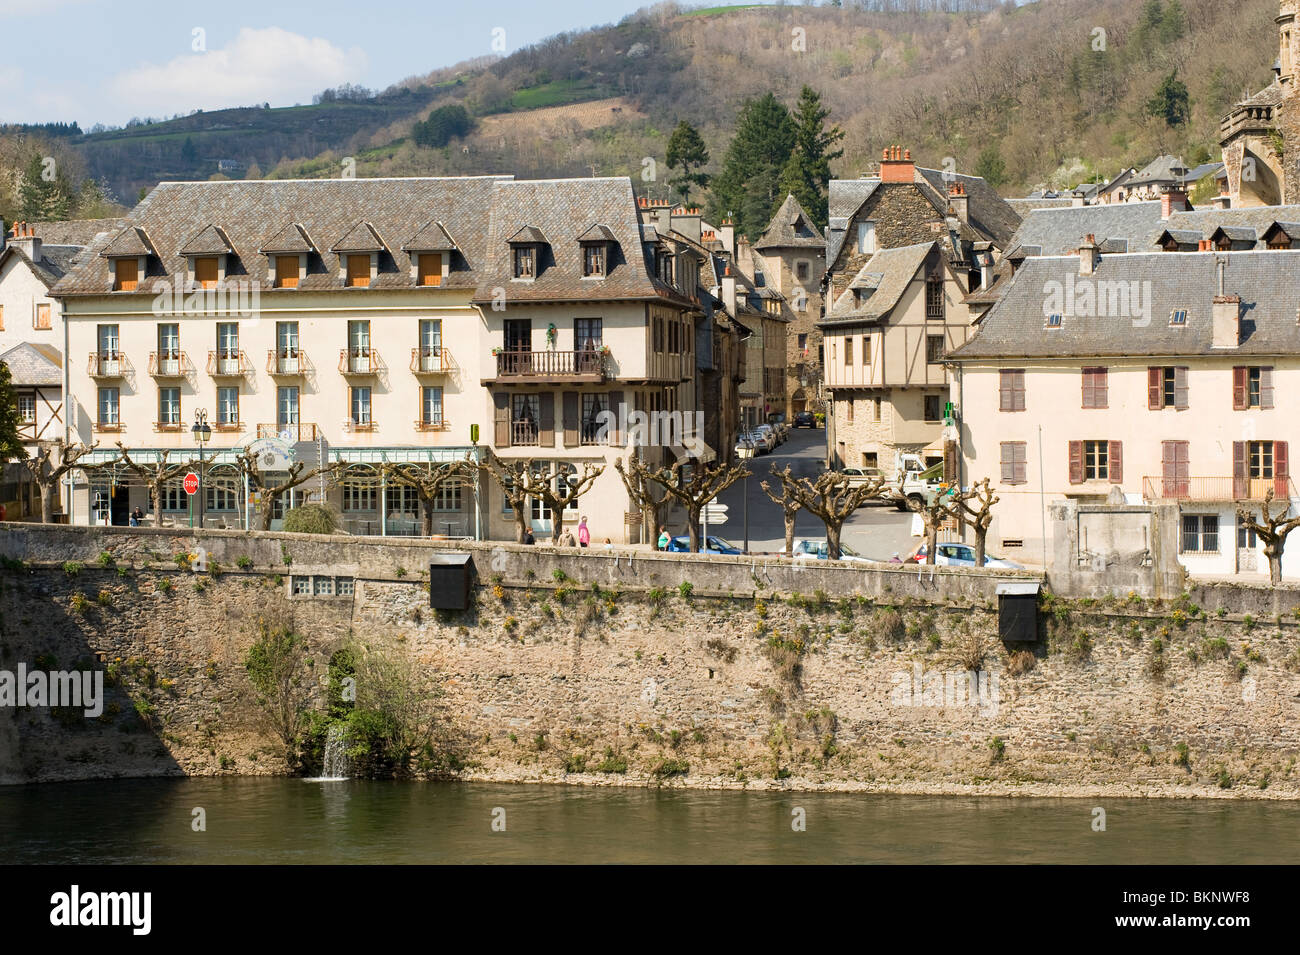 Das Stadtzentrum von dem mittelalterlichen Dorf Estaing mit Renaissance und romanische Architektur Aveyron Frankreich Stockfoto